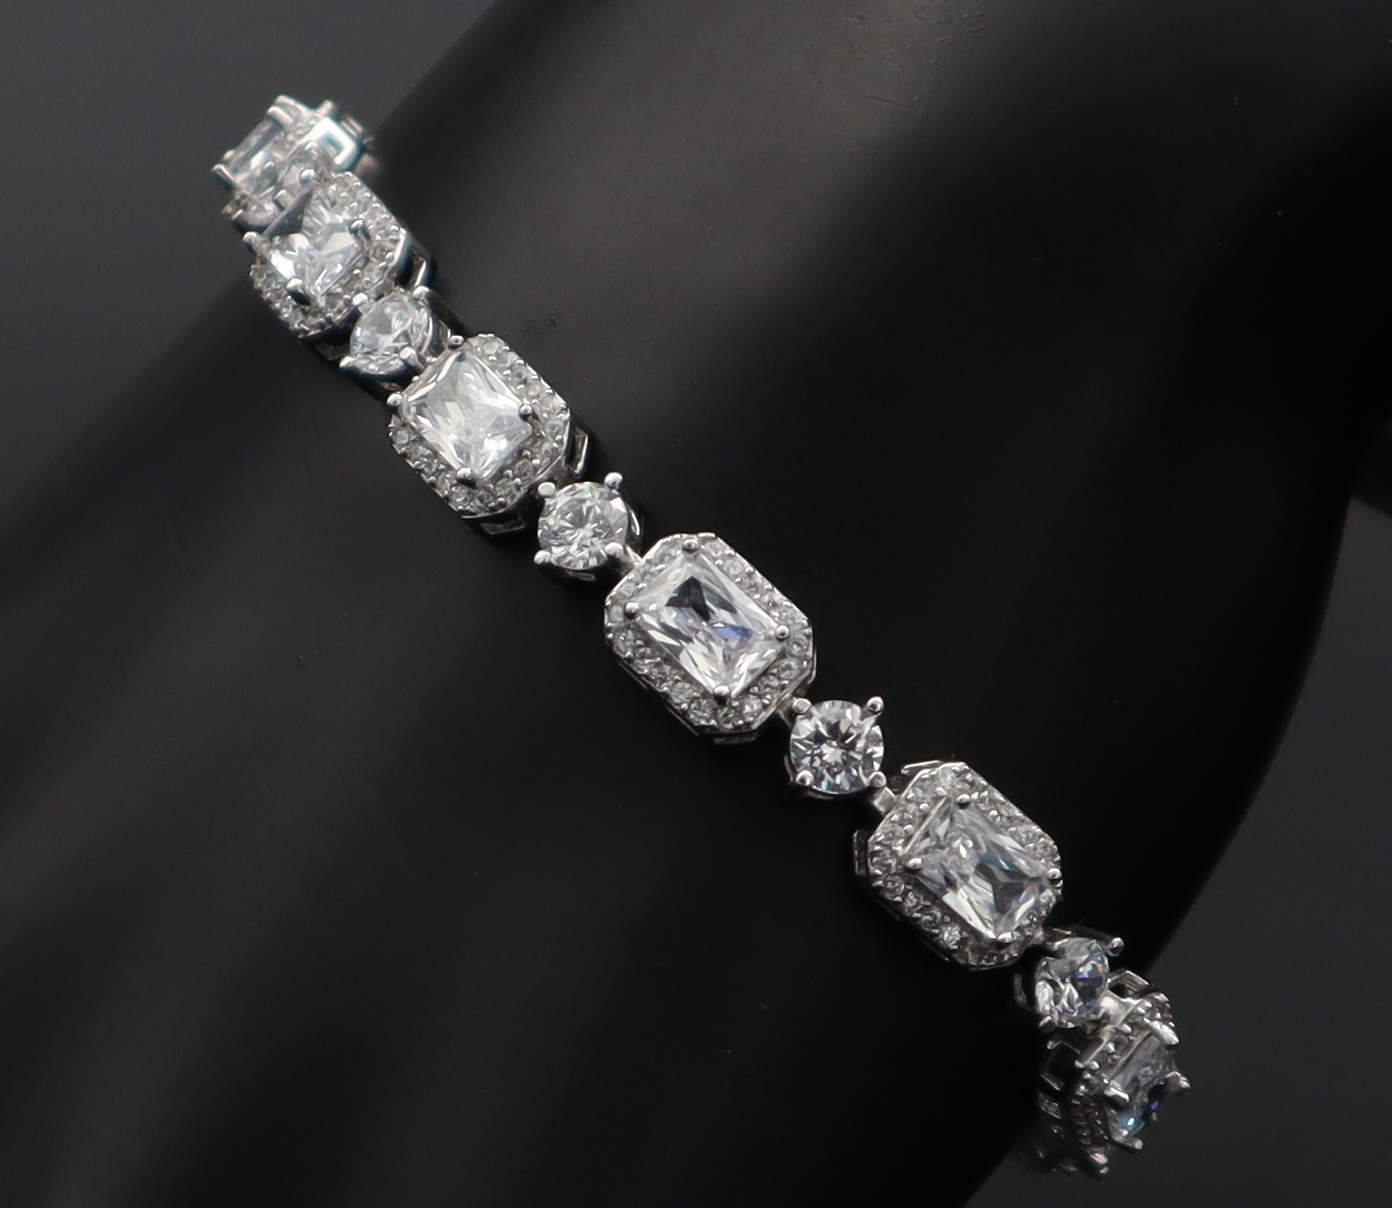 دستبند نقره زنانه - طرح الماس | کد WB-7